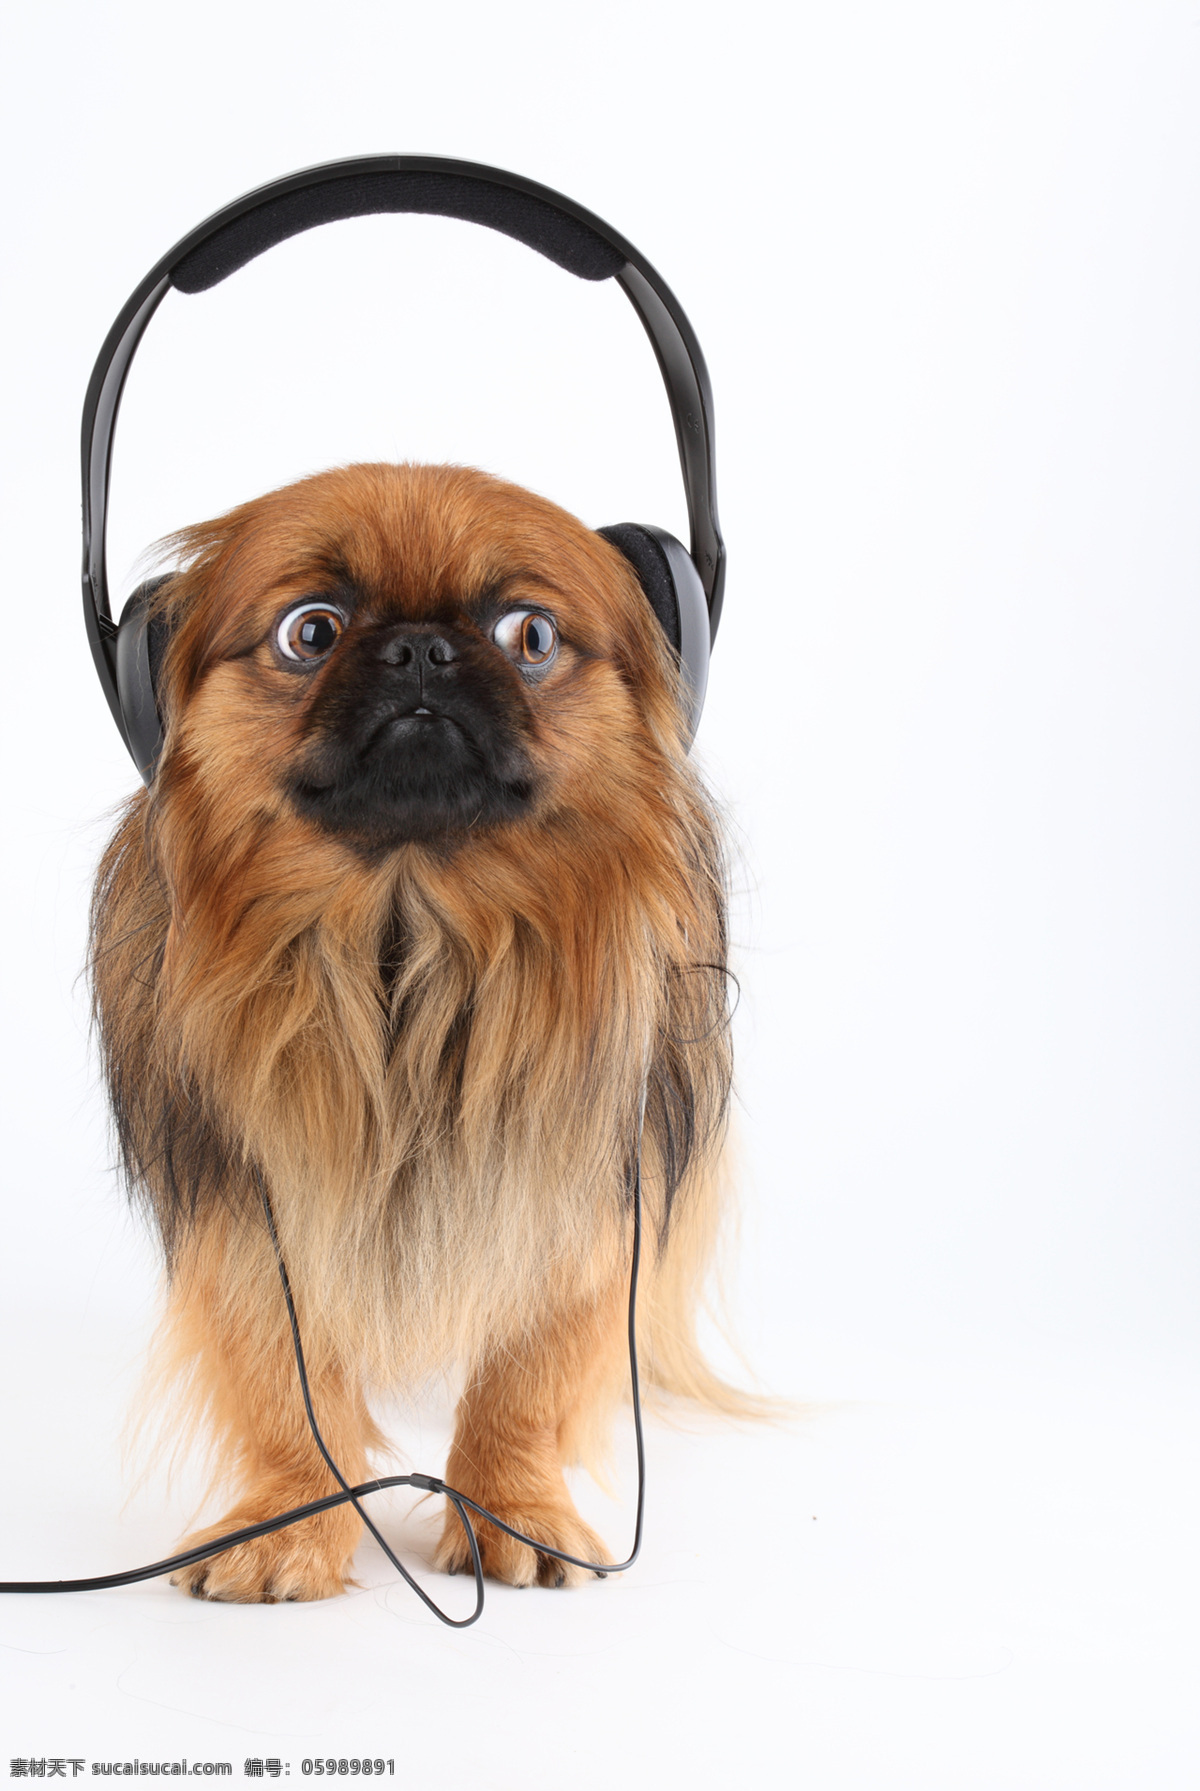 听音乐的小狗 小狗 宠物狗 戴耳机的小狗 家禽家畜 生物世界